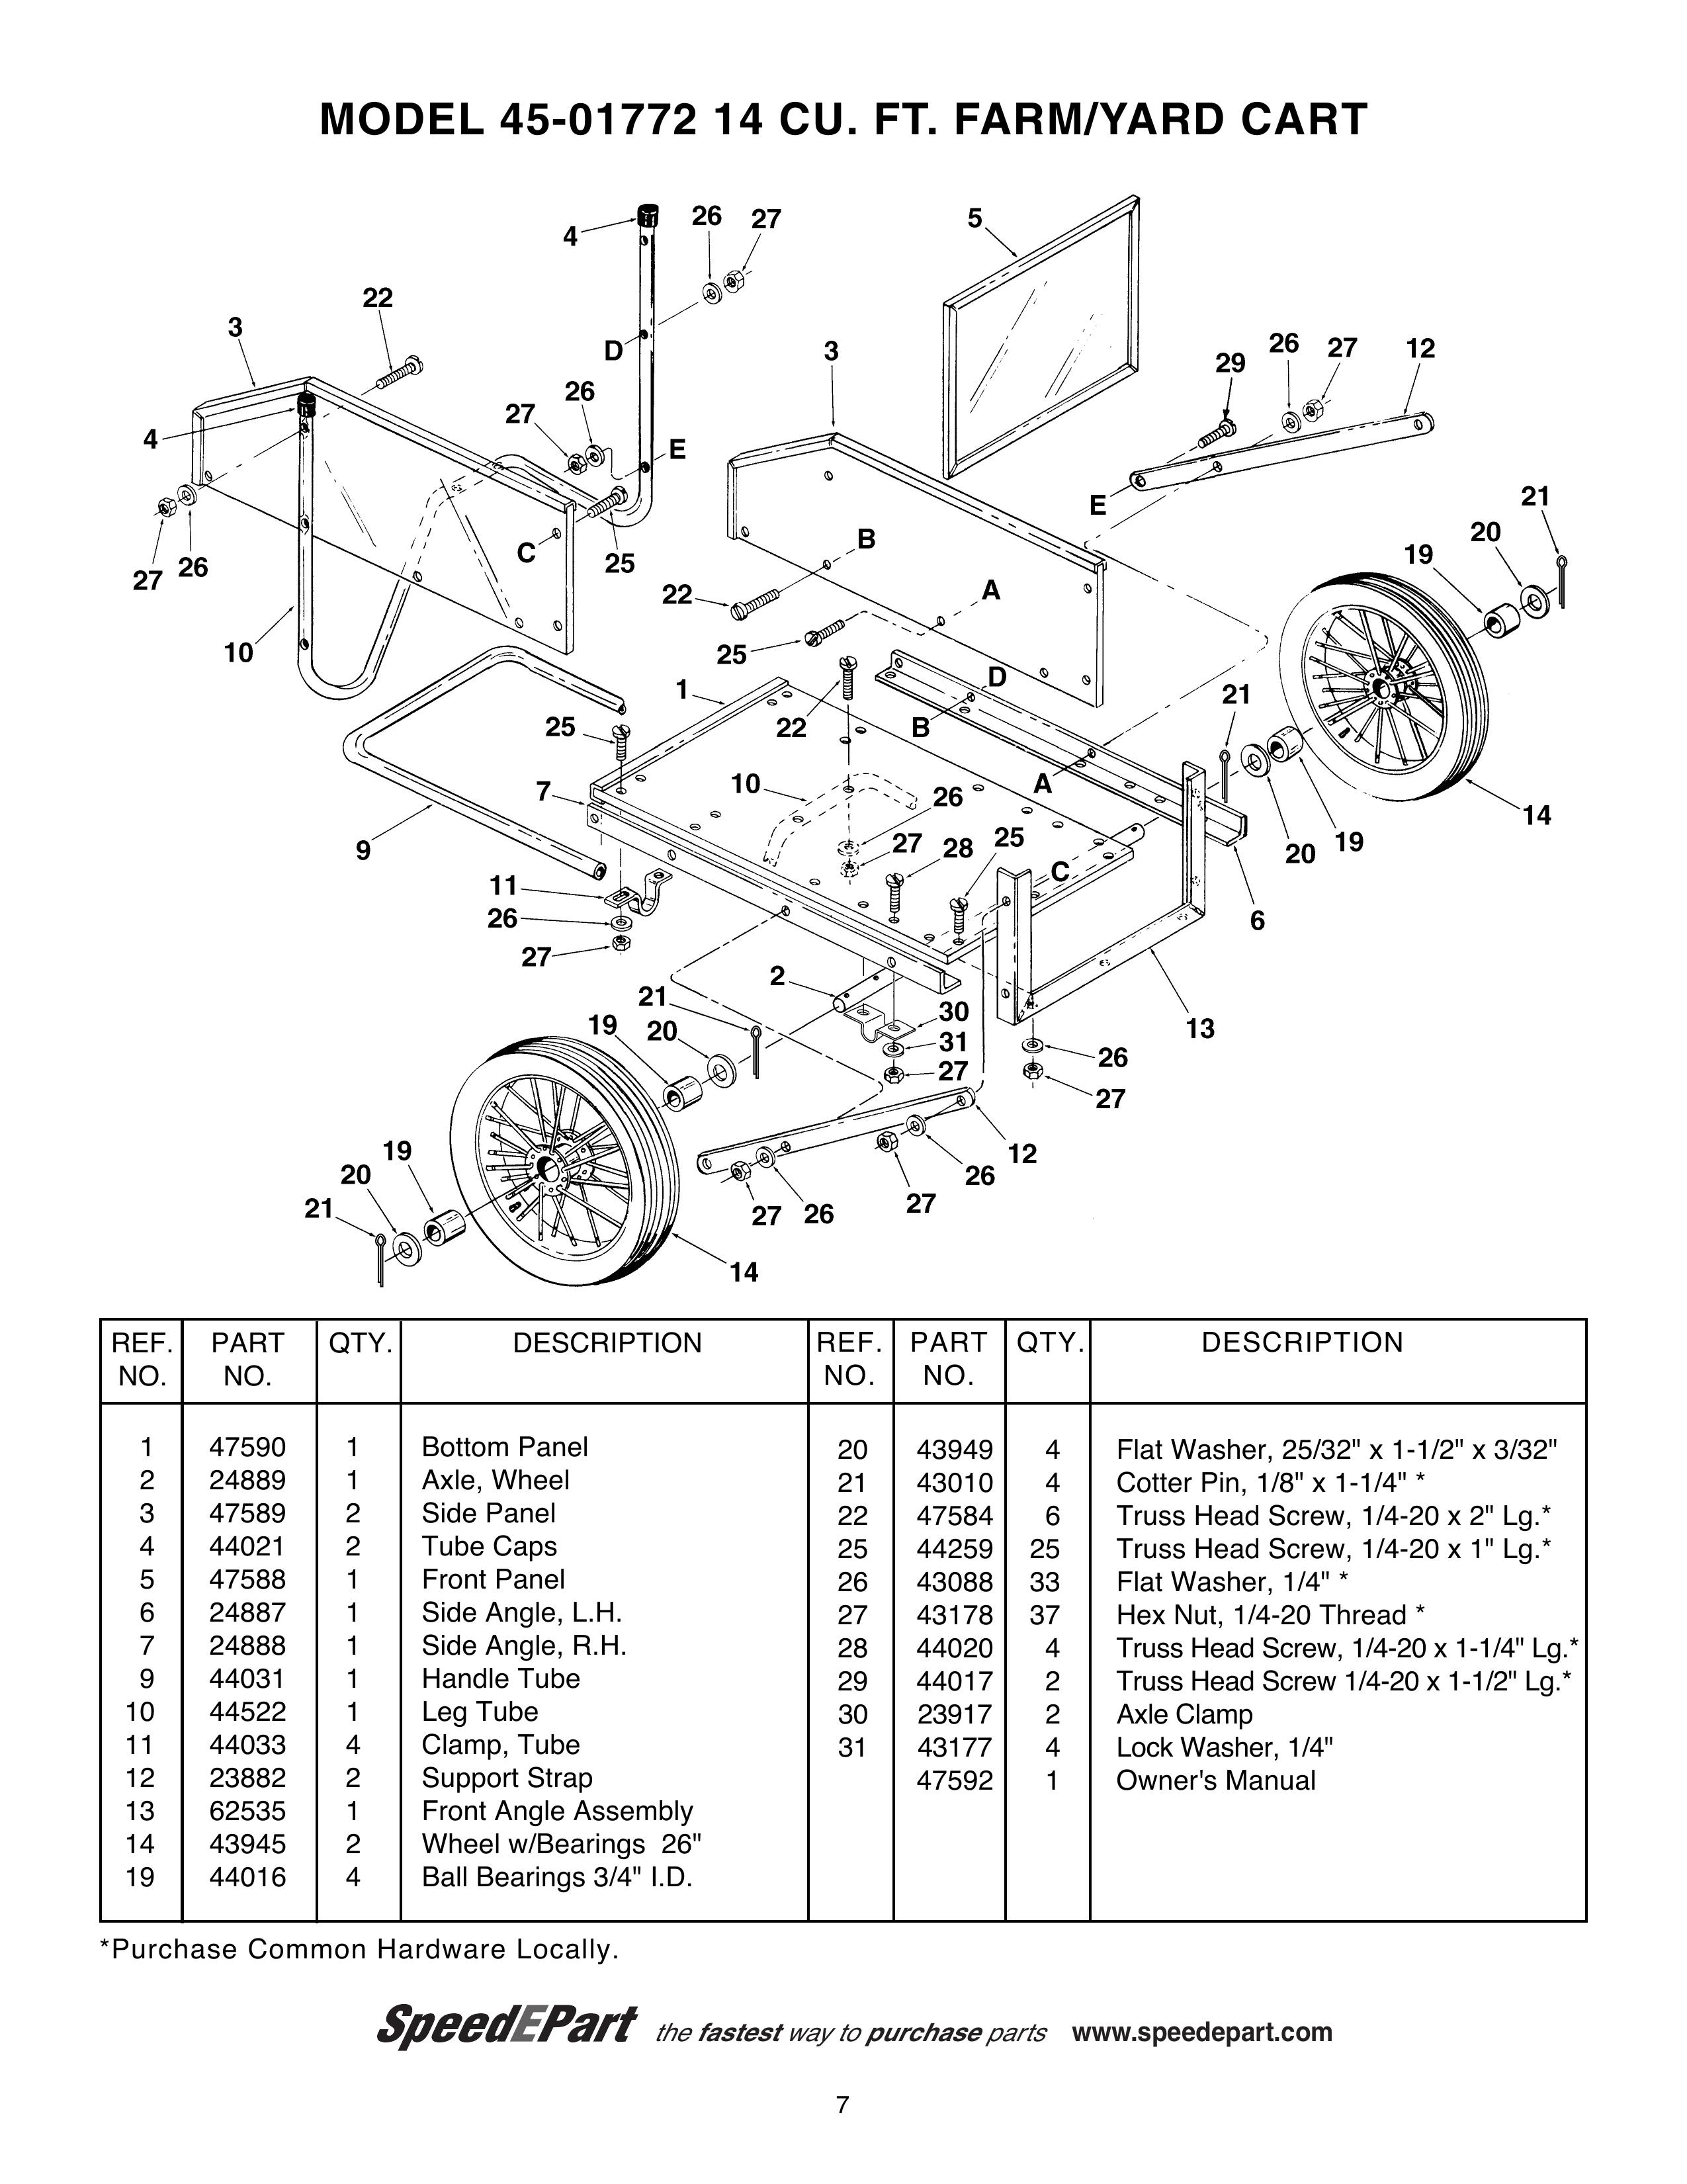 Agri-Fab 45-01772 Outdoor Cart User Manual